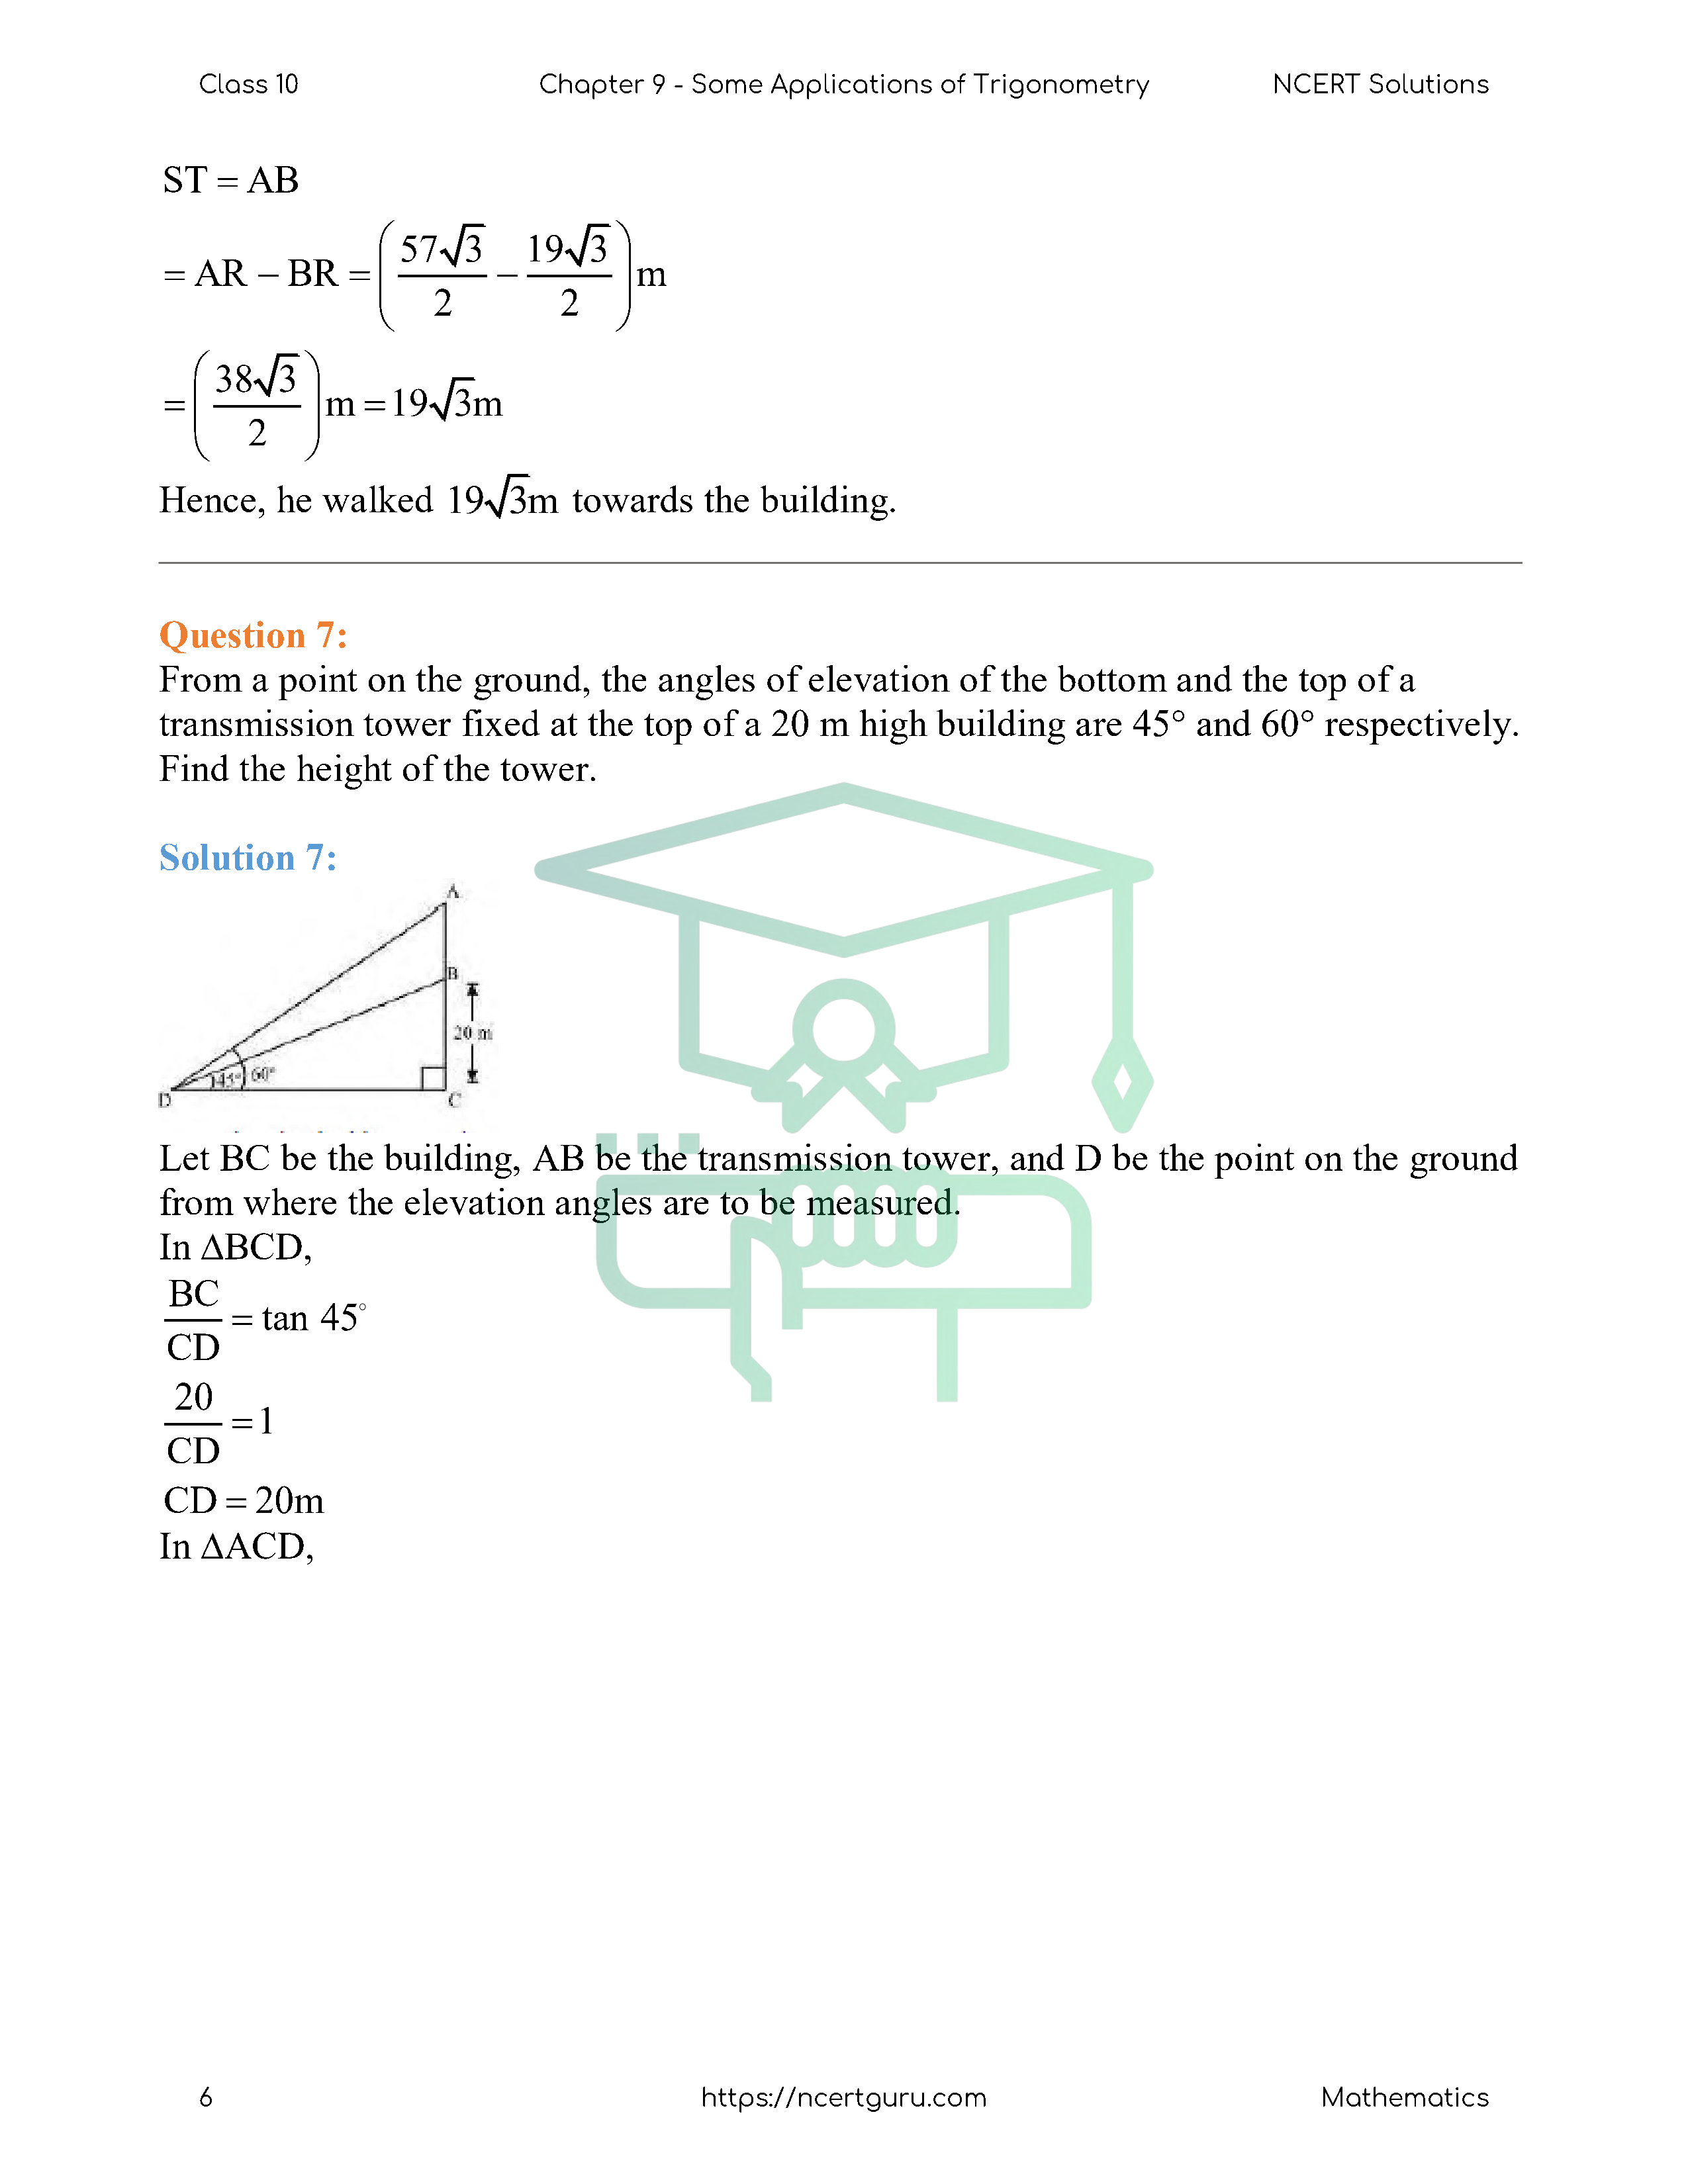 NCERT Solutions for Class 10 Maths Chapter 9